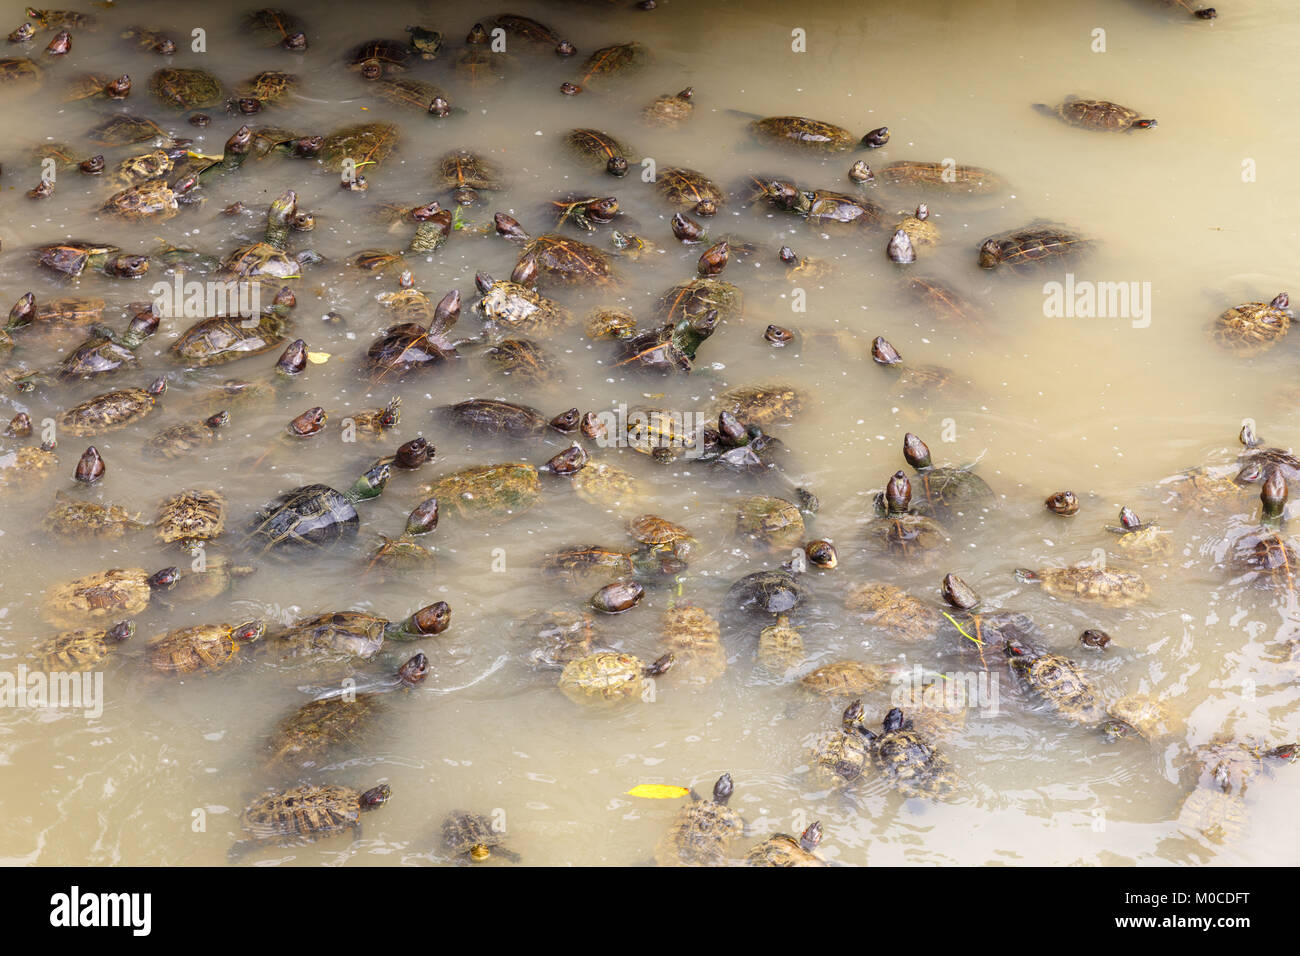 Muchas tortugas nadar en un estanque con agua sucia Foto de stock